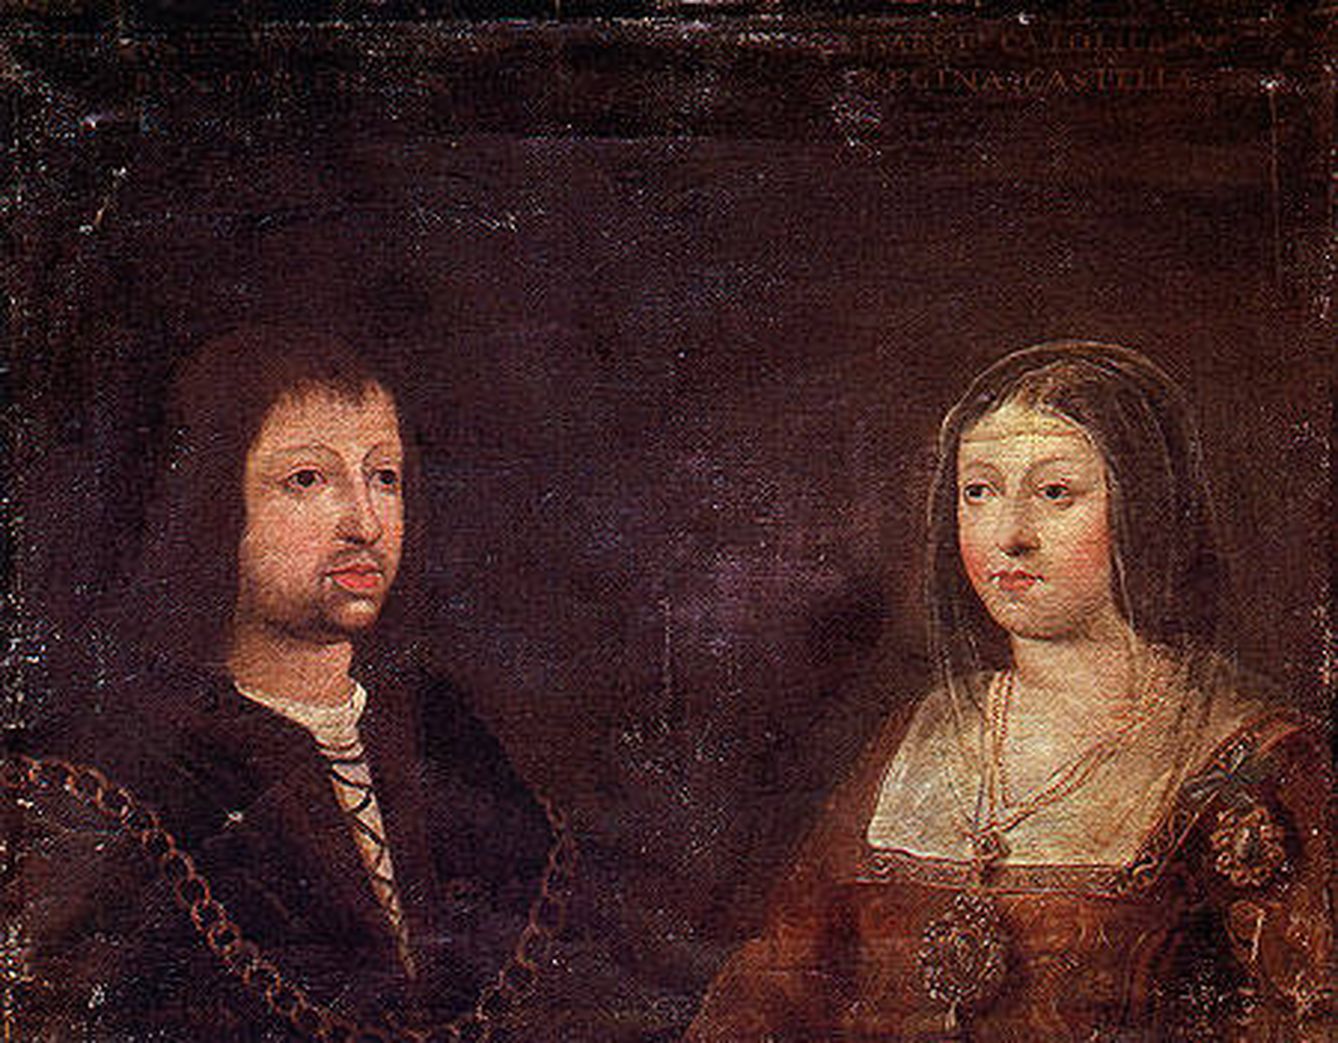 El matrimonio de los Reyes Católicos en 1469 unió los reinos de Castilla y Aragón. (Wikimedia Commons)